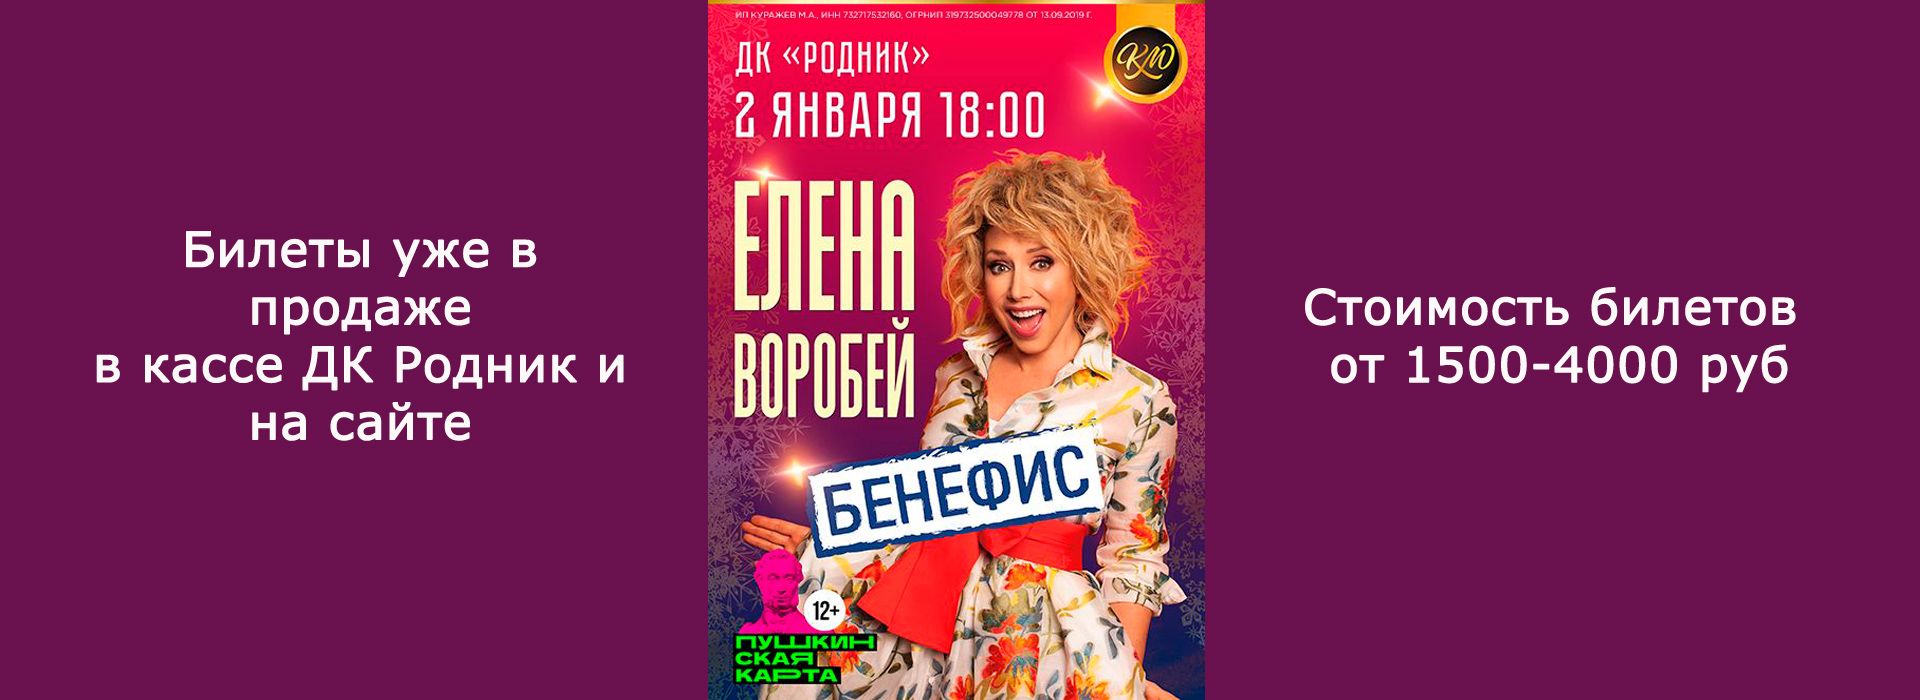 Концерт Елены Воробей